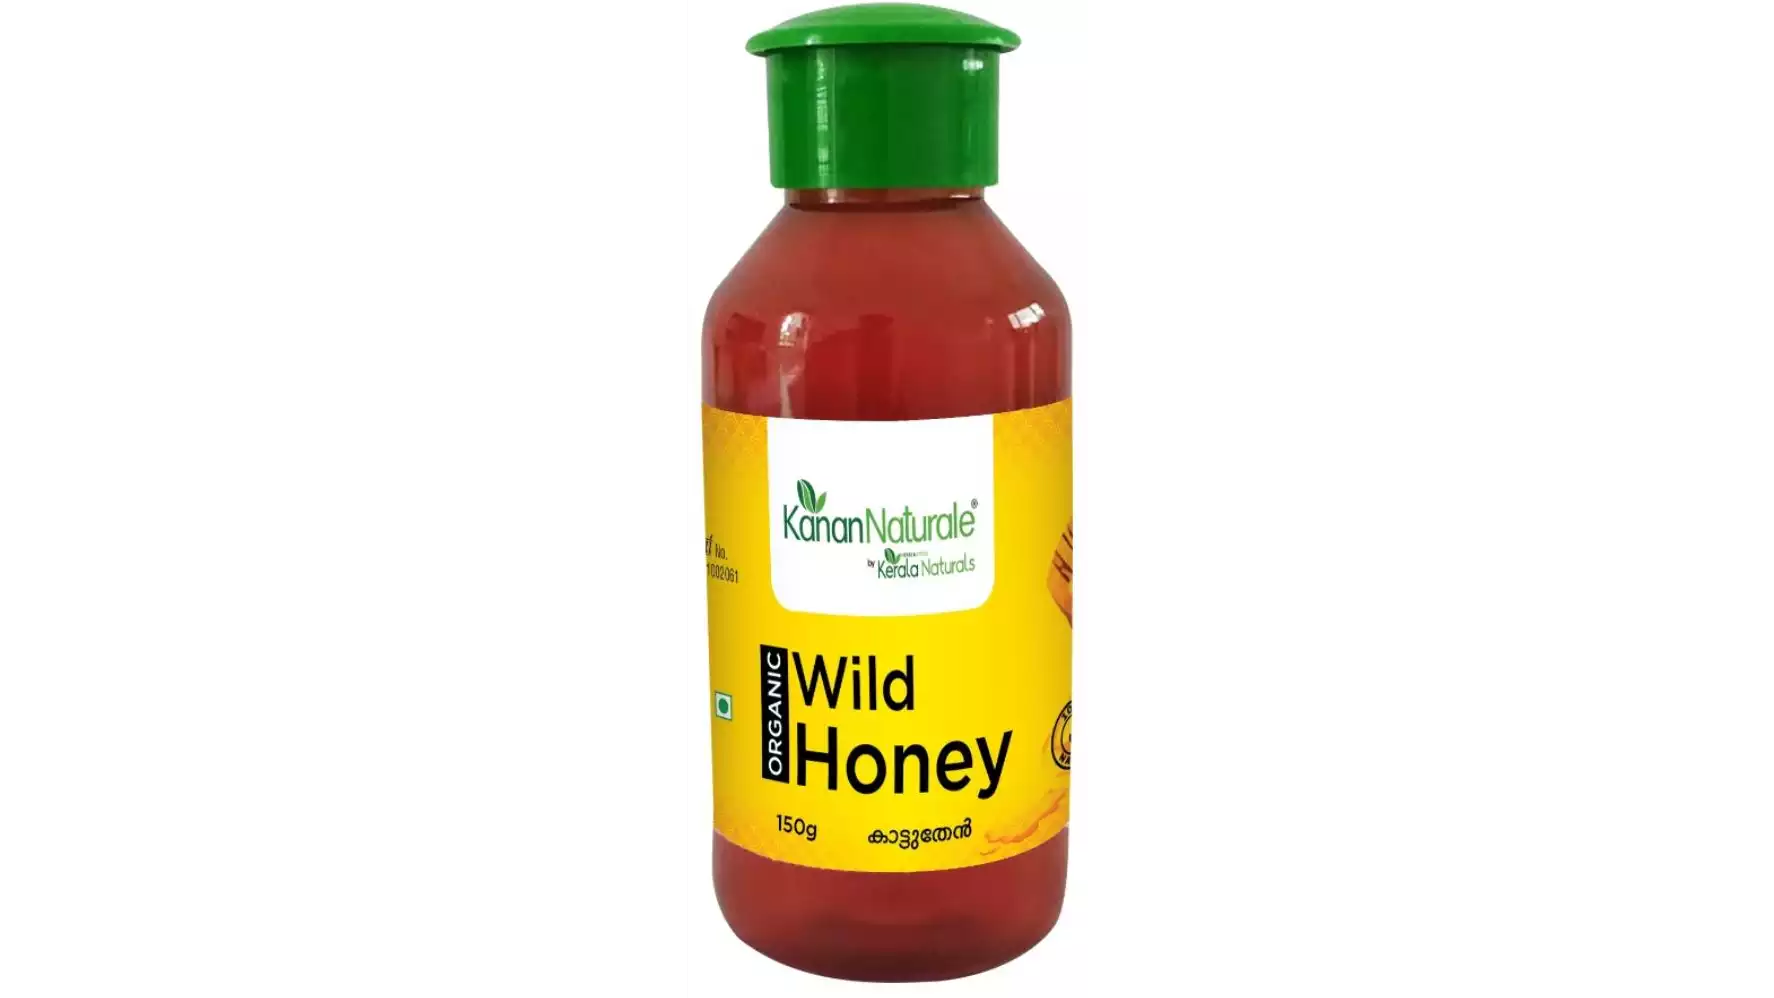 Kerala Naturals Organic Wild Honey (150g)